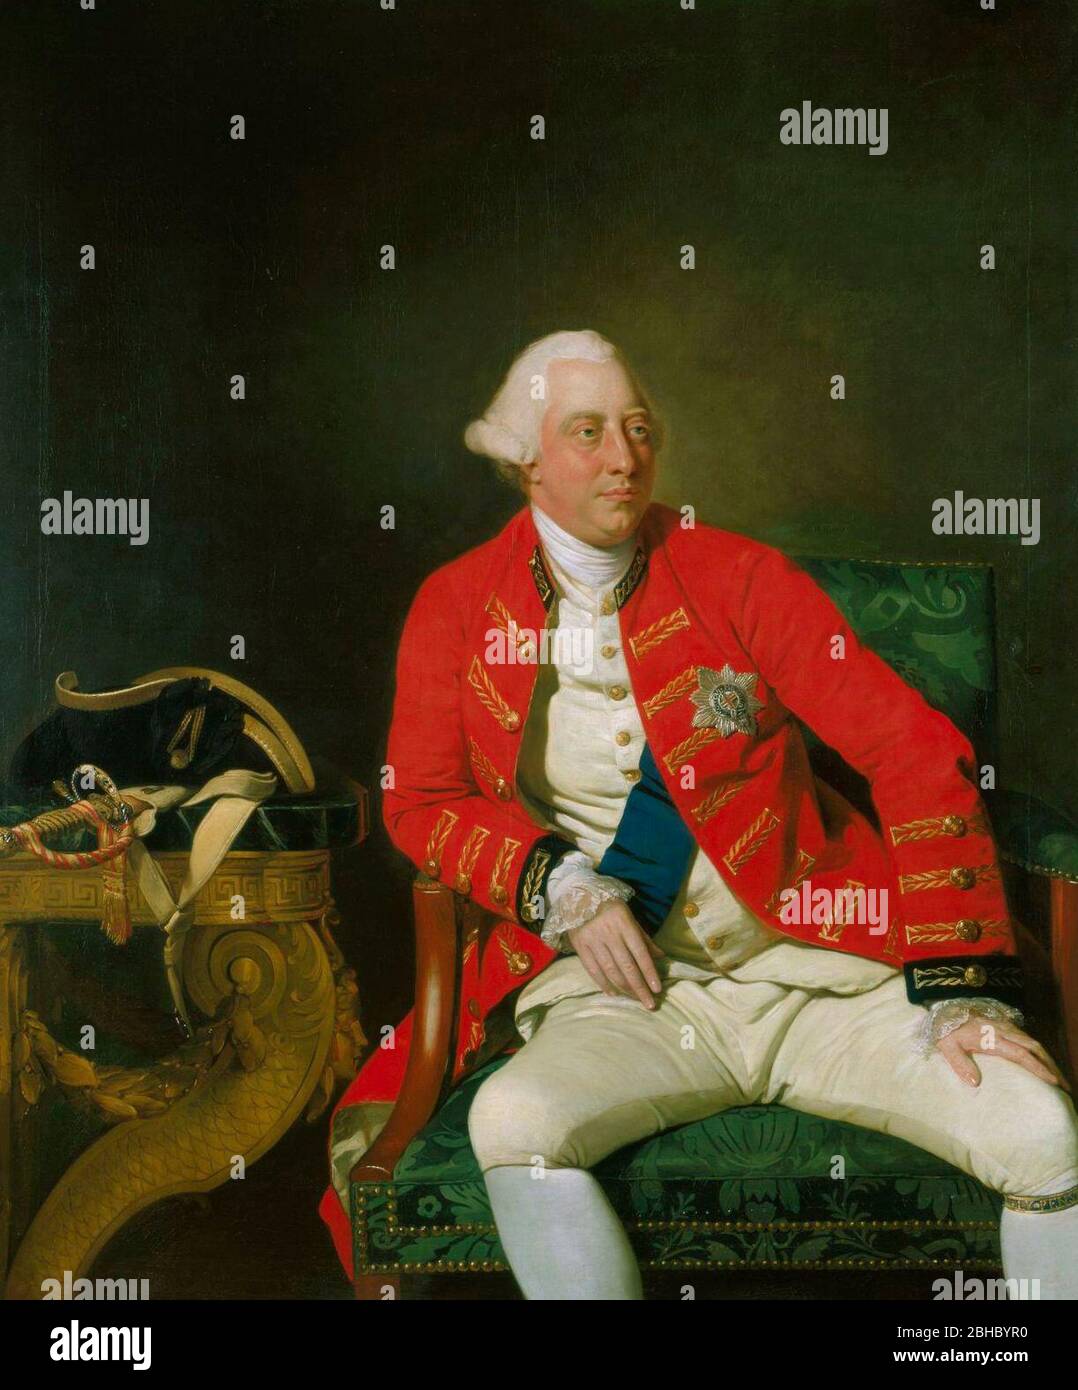 Porträt von George III. Des Vereinigten Königreichs (1738-1820) - EINE dreiviertel Figur von König George III., die in einem General Officer's Mantel mit den Bändern und Stern des Garters sitzt, trägt den Garter um sein Bein; sein Hut und Schwert ruhen auf einem Tisch in der Nähe. 1771 fertiggestellt, porträtiert er den König im Alter von 33 Jahren mit einem stetigen ernsten Blick, einem rosigen gesunden Gesicht und einem ruhigen, sicheren Verhalten. Johan Zoffany, 1771 Stockfoto